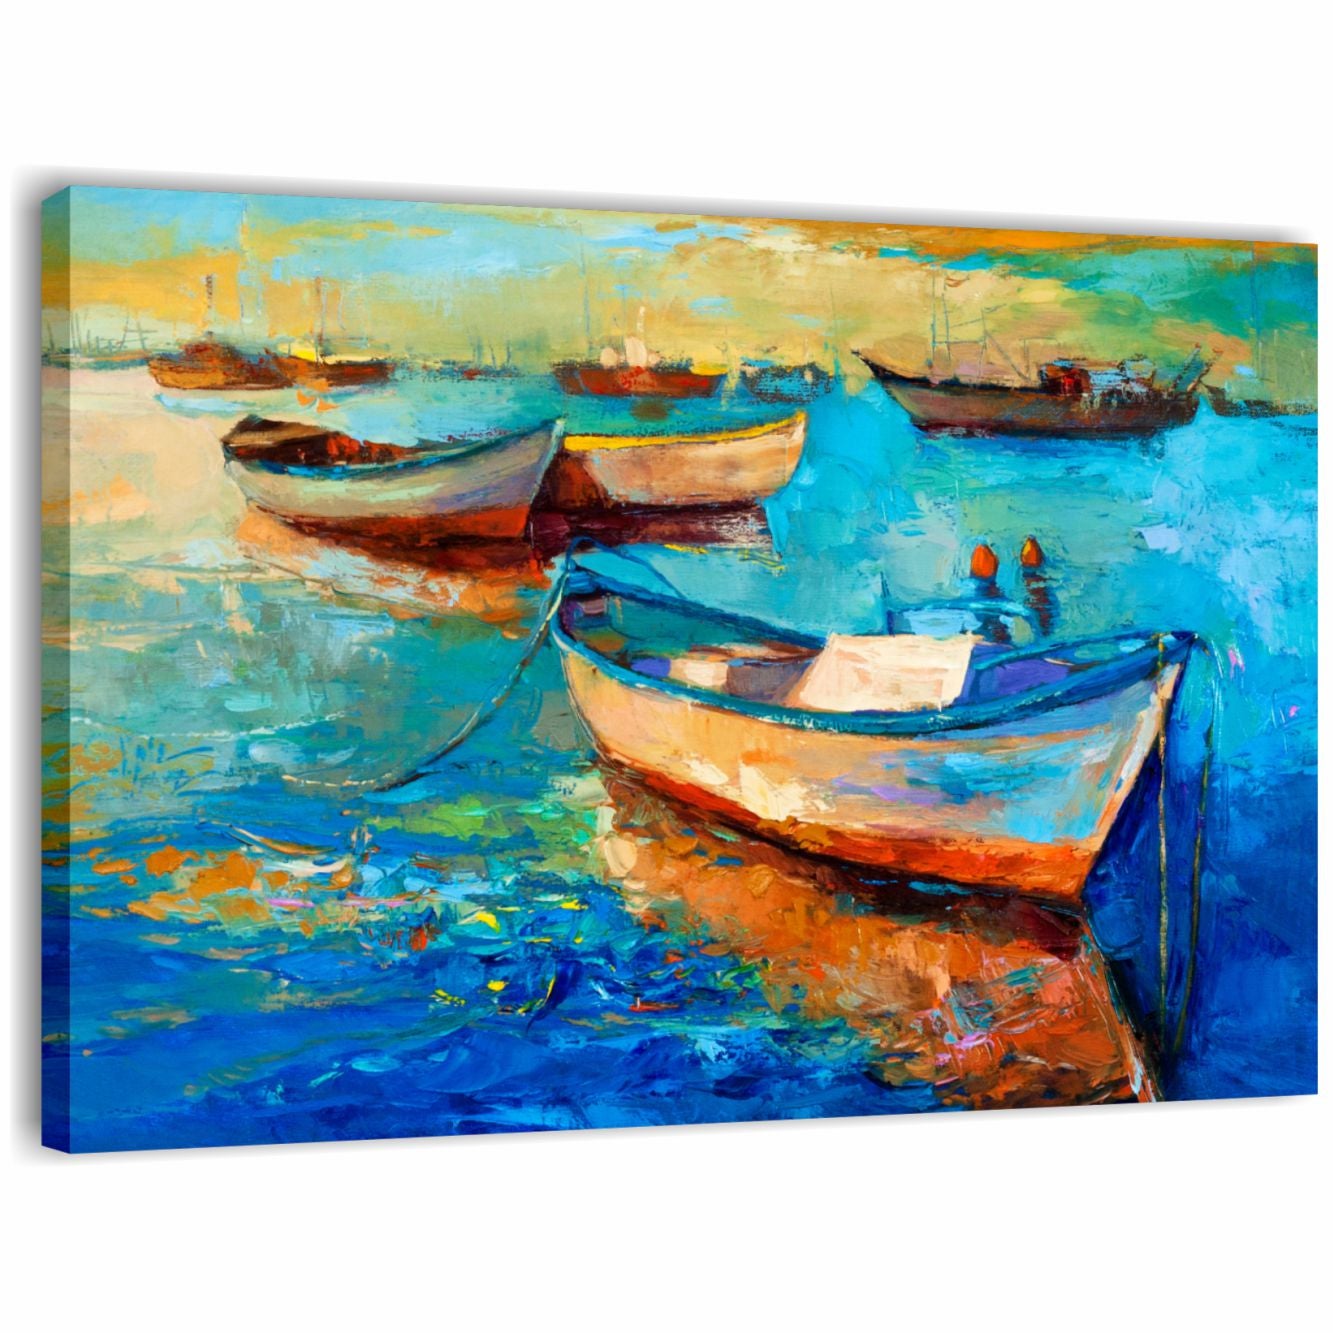 Mare e barche astratto 3 - Quadro moderno con paesaggio marino stampa su  tela 100x70 cm